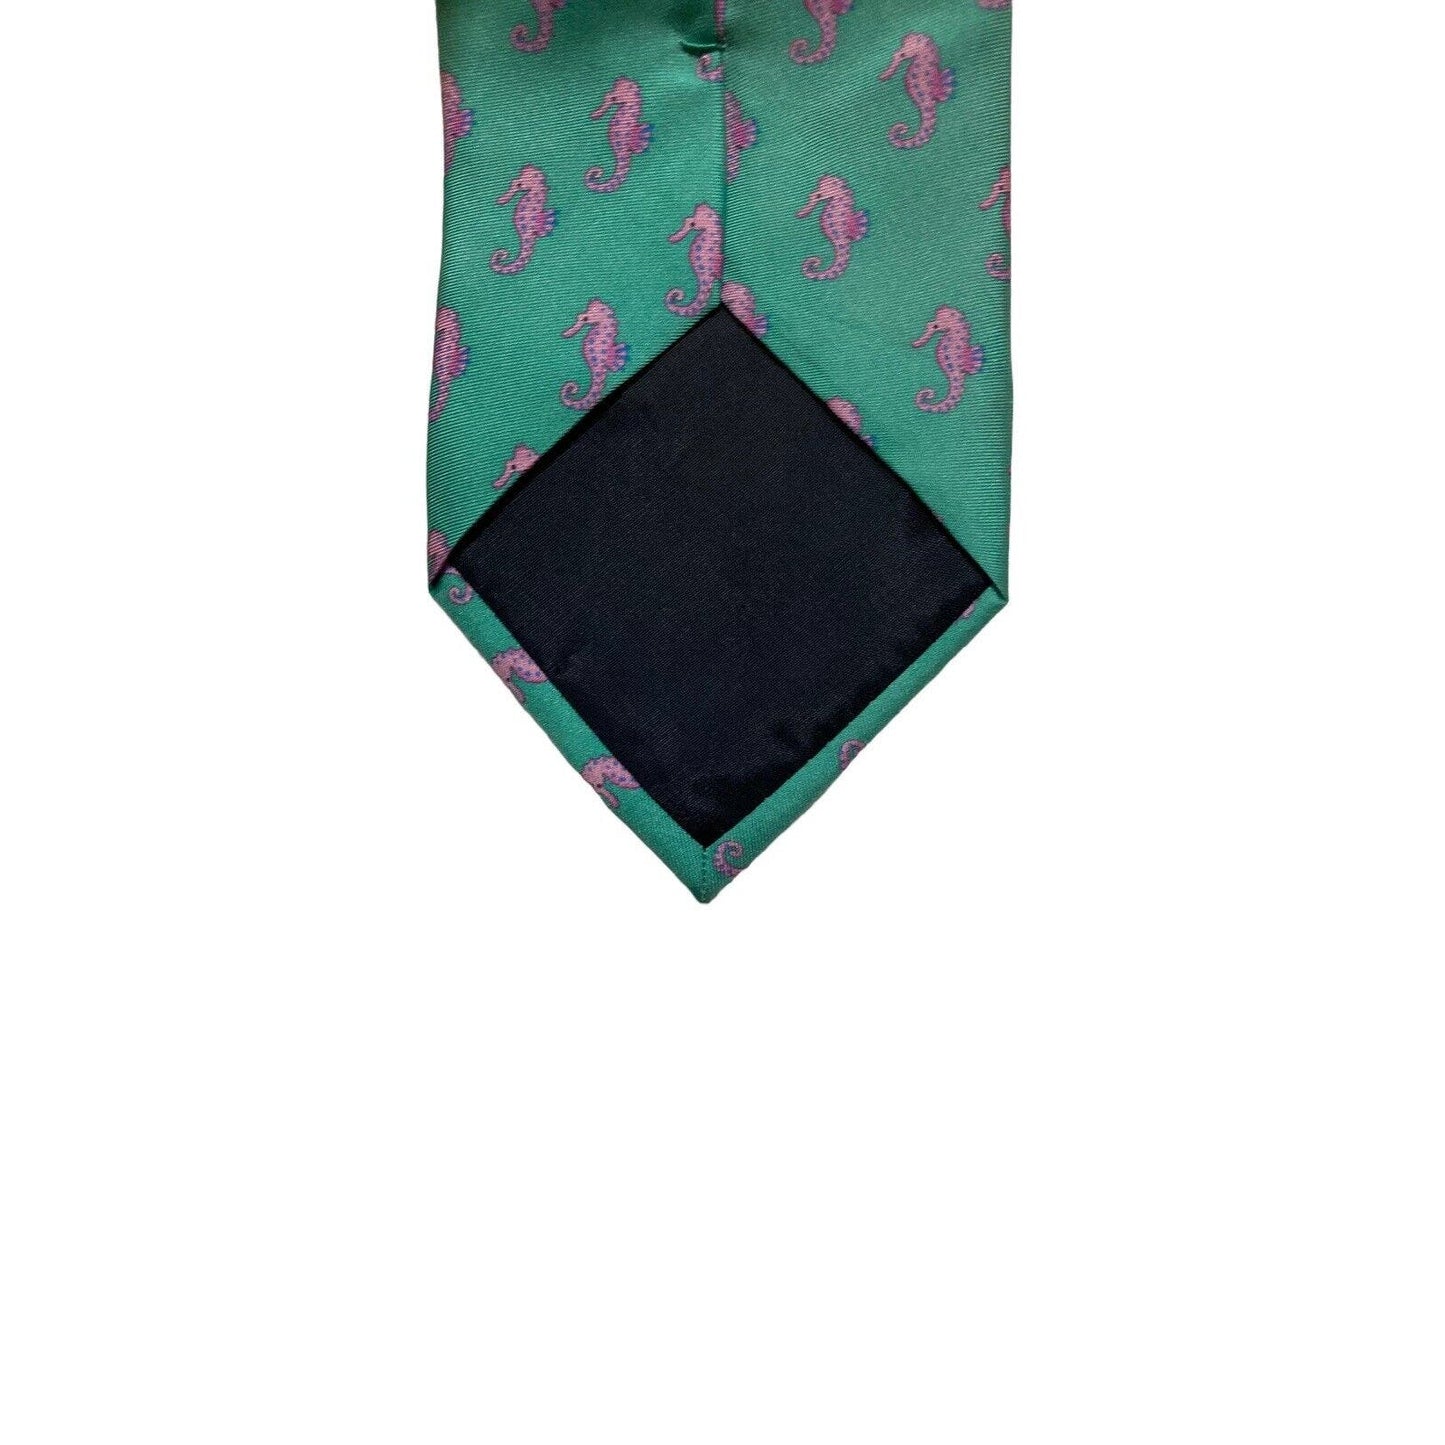 Alynn Neckwear Seahorse Green Pink Vintage Novelty Necktie 100% Silk